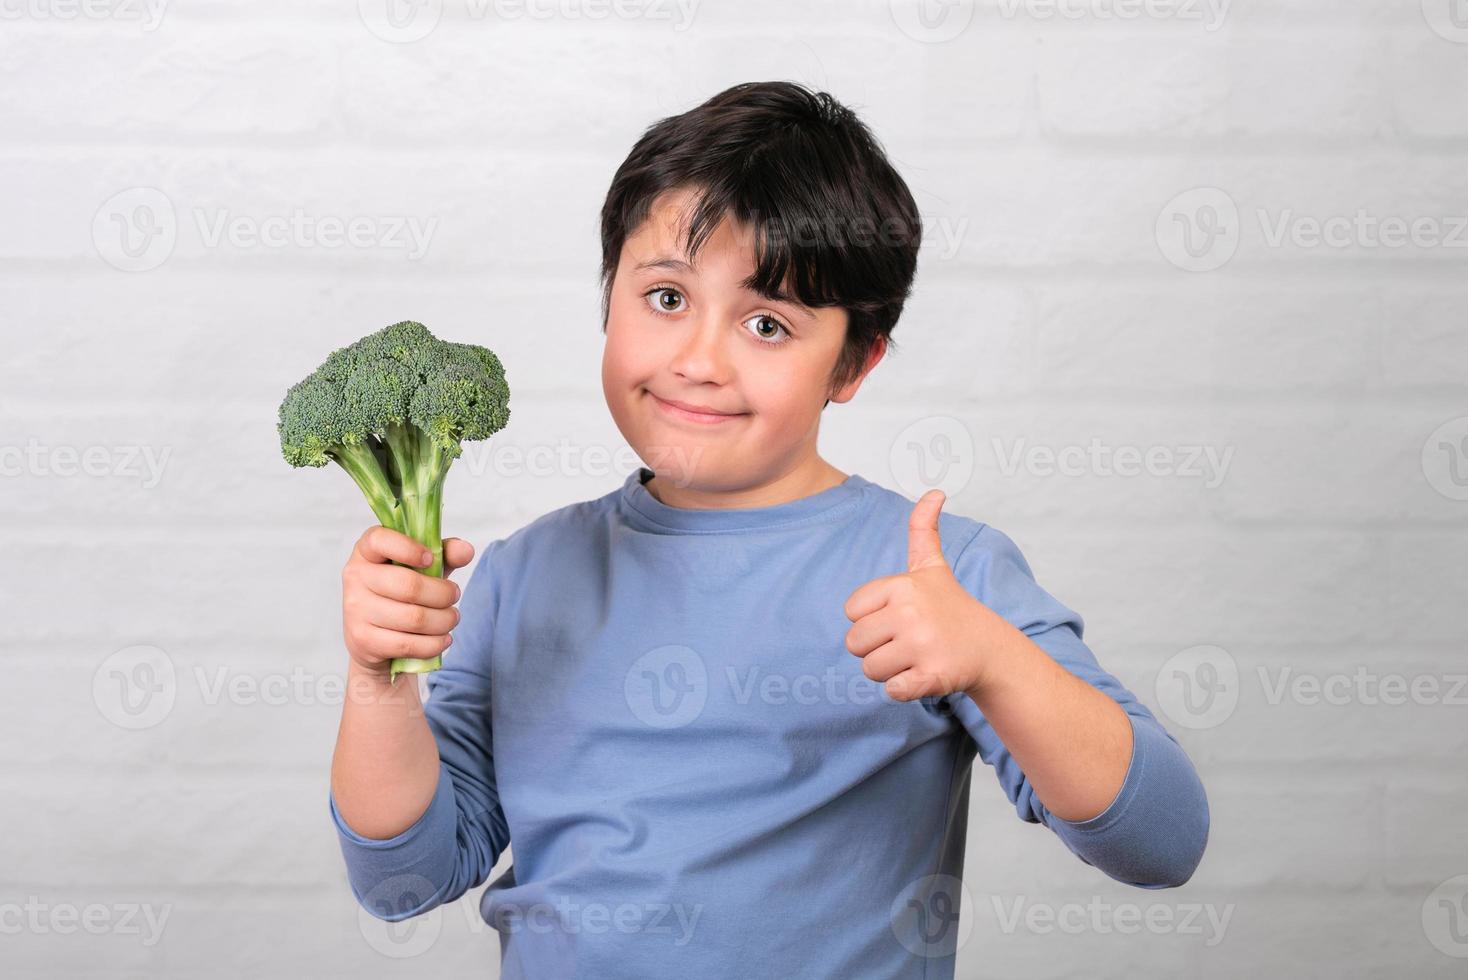 enfant heureux avec du brocoli dans sa main montrant le pouce vers le haut.concept d'aliments sains photo